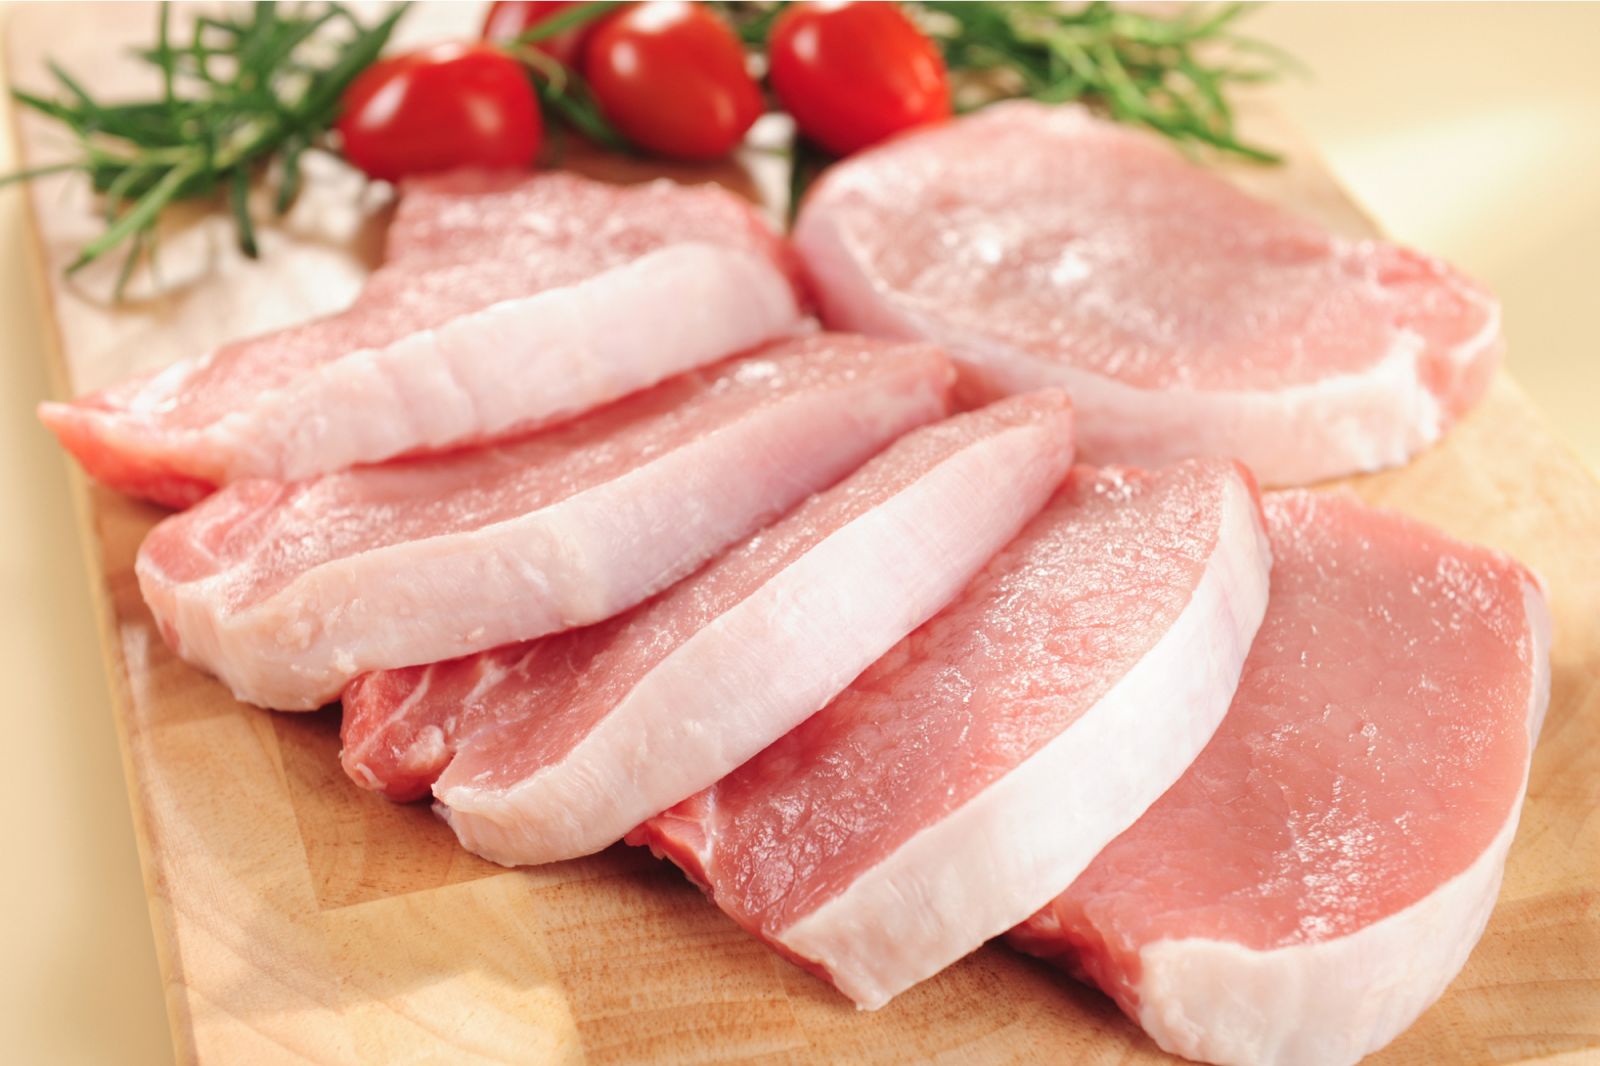 Theo các chuyên gia, trong 100g thịt heo có lượng calo khoảng 242.1 kcal